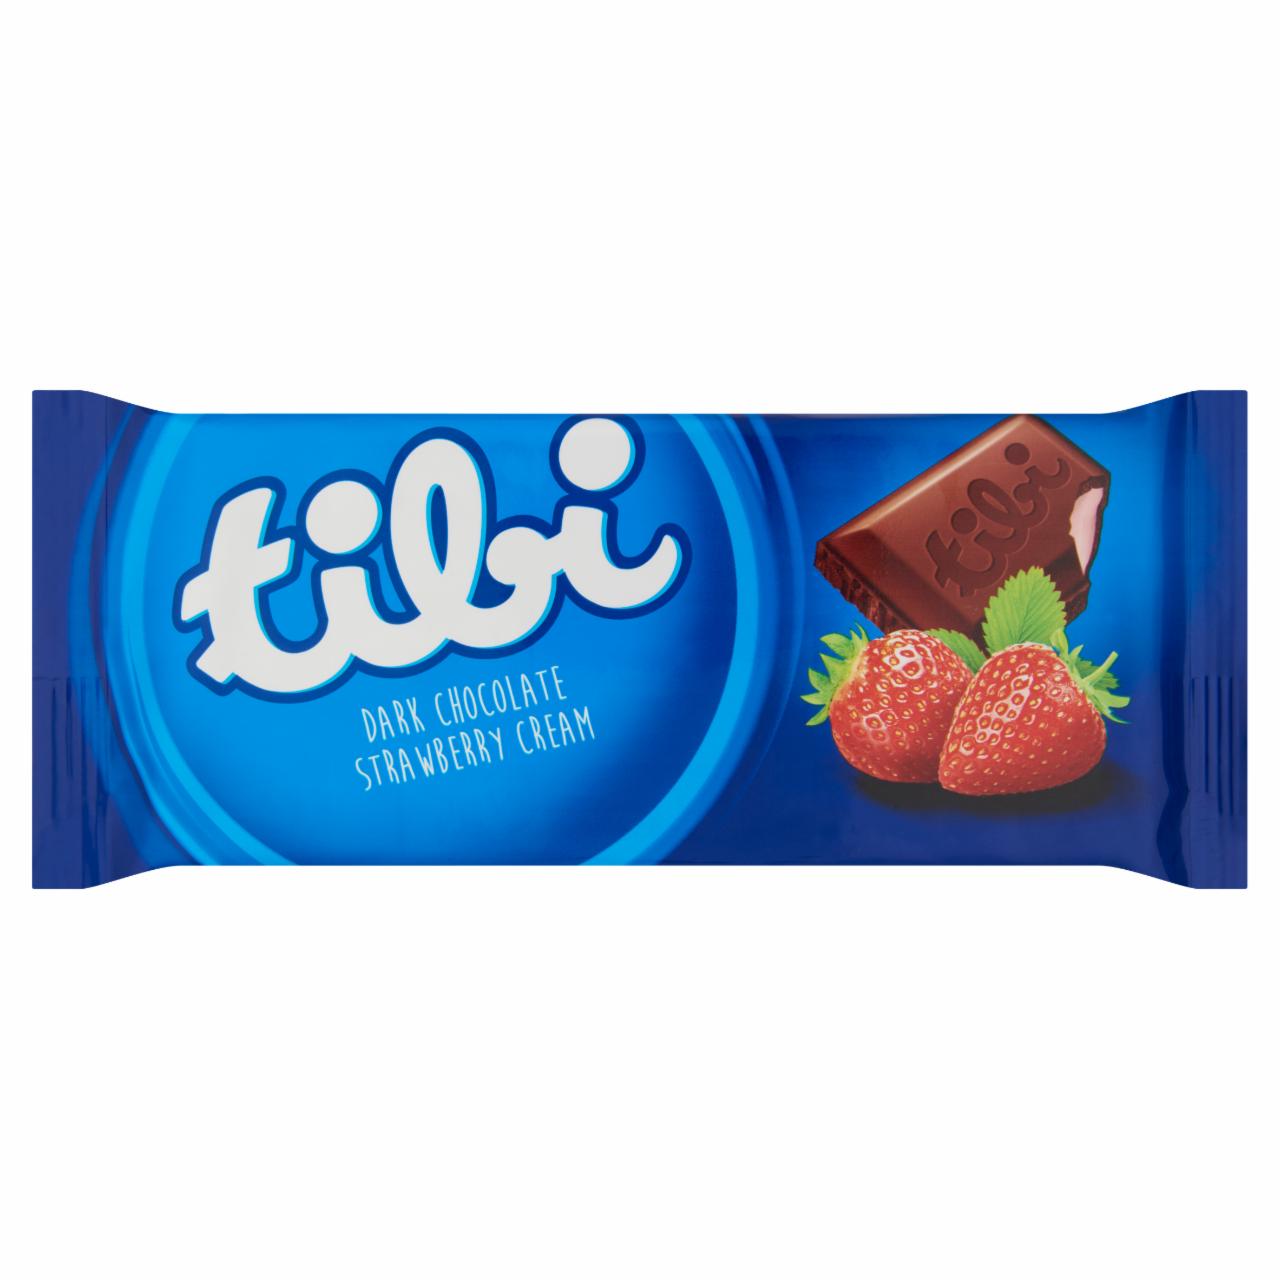 Képek - Tibi eperkrémes étcsokoládé 90 g